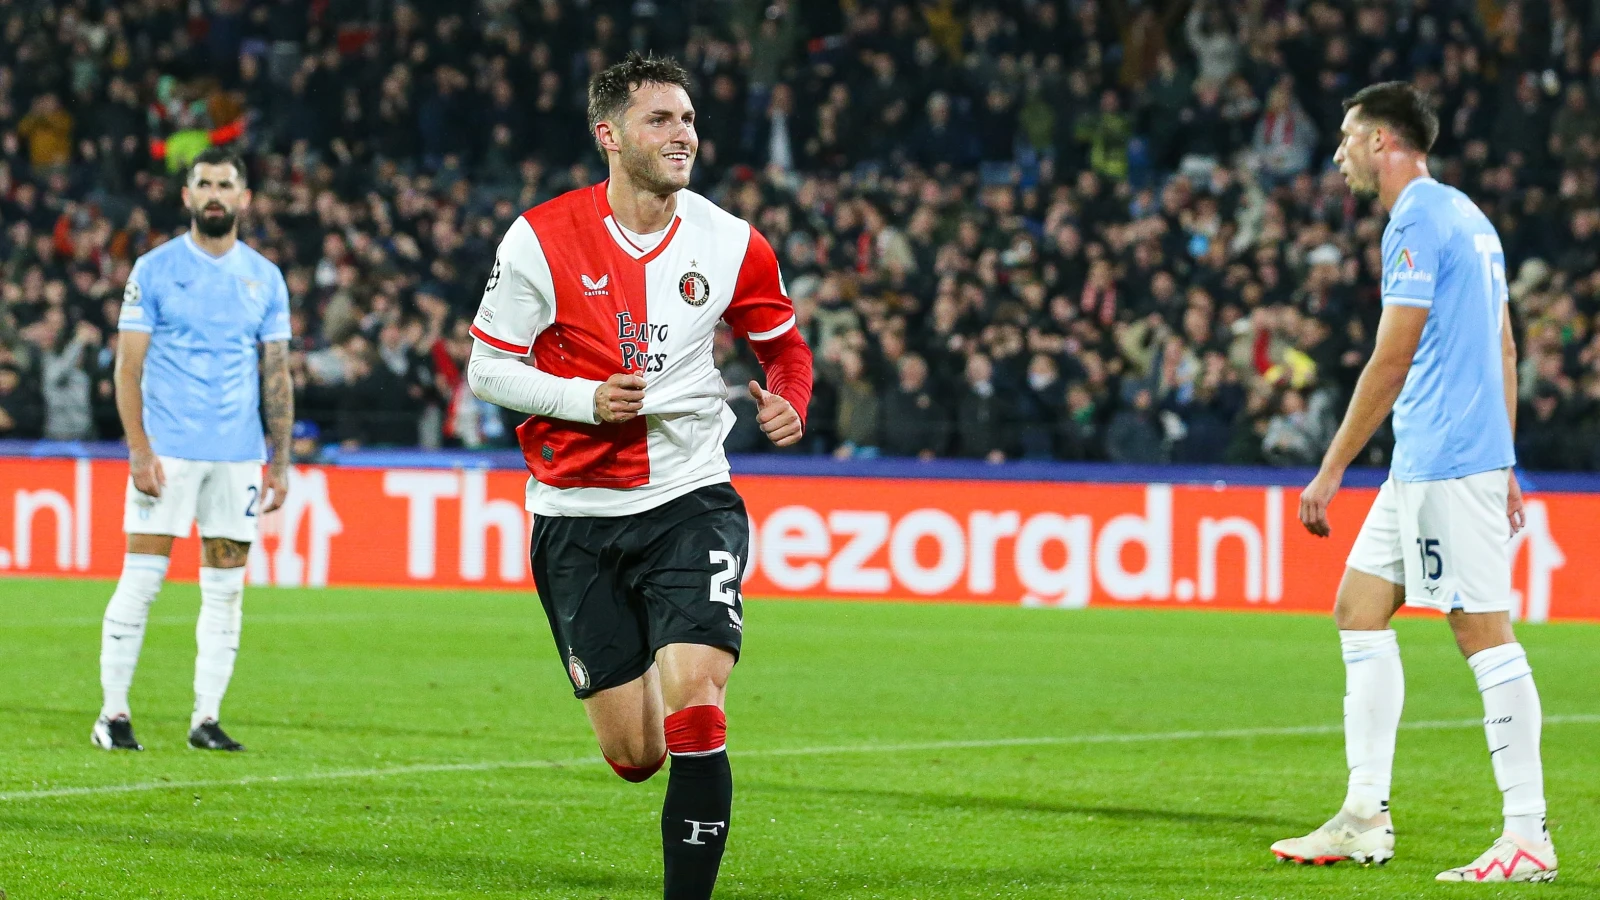 'Feyenoord wil zo'n 100 miljoen euro hebben voor Gimenez'